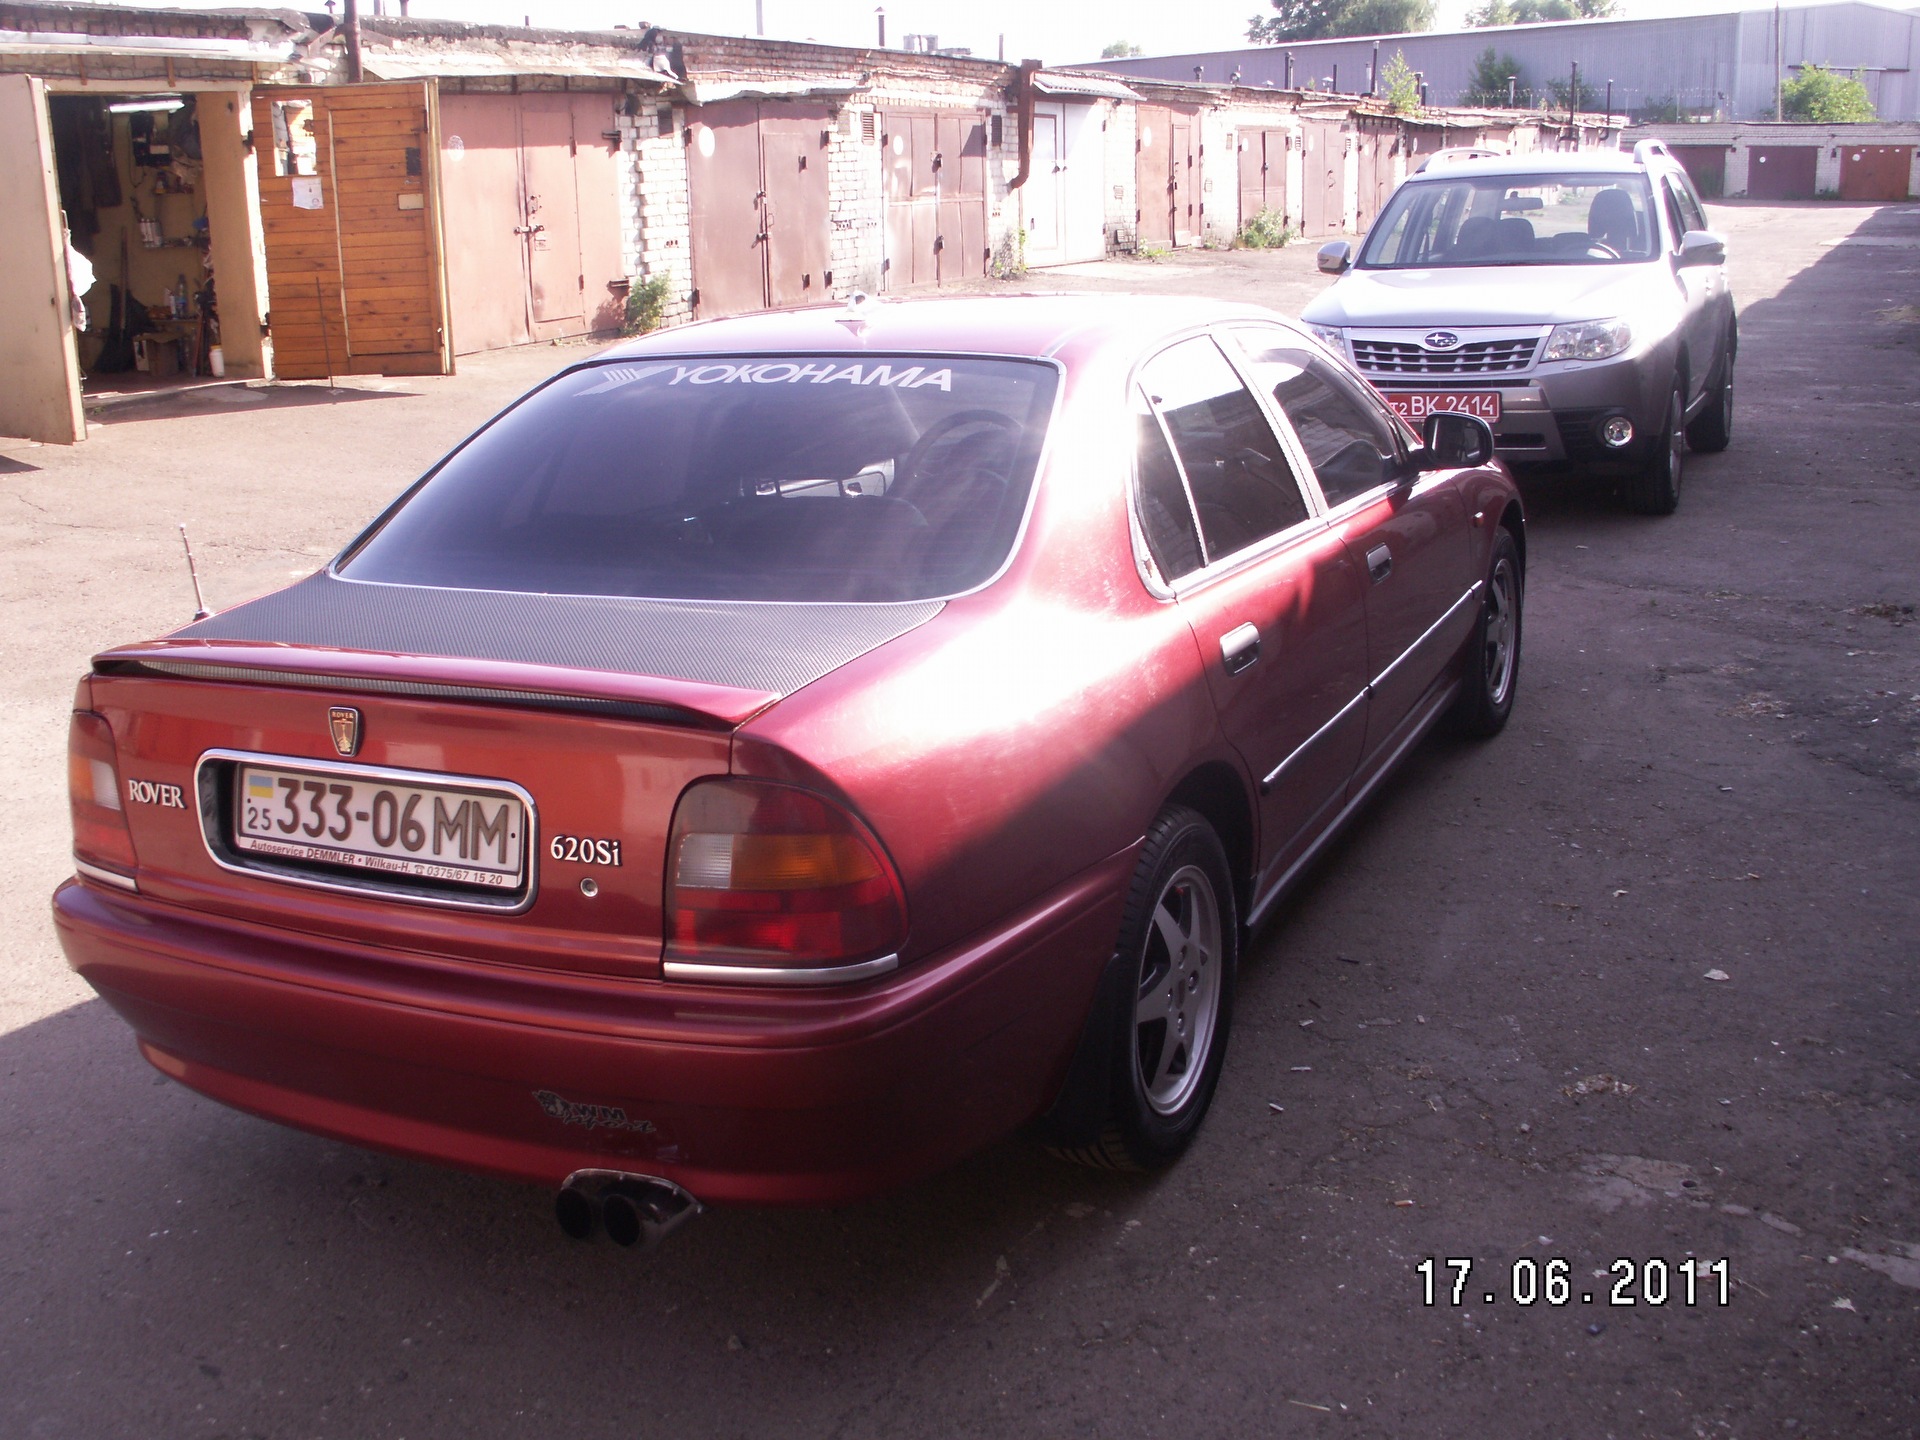 600 т д. Rover 600, 1994. Rover 600 тюнинг.